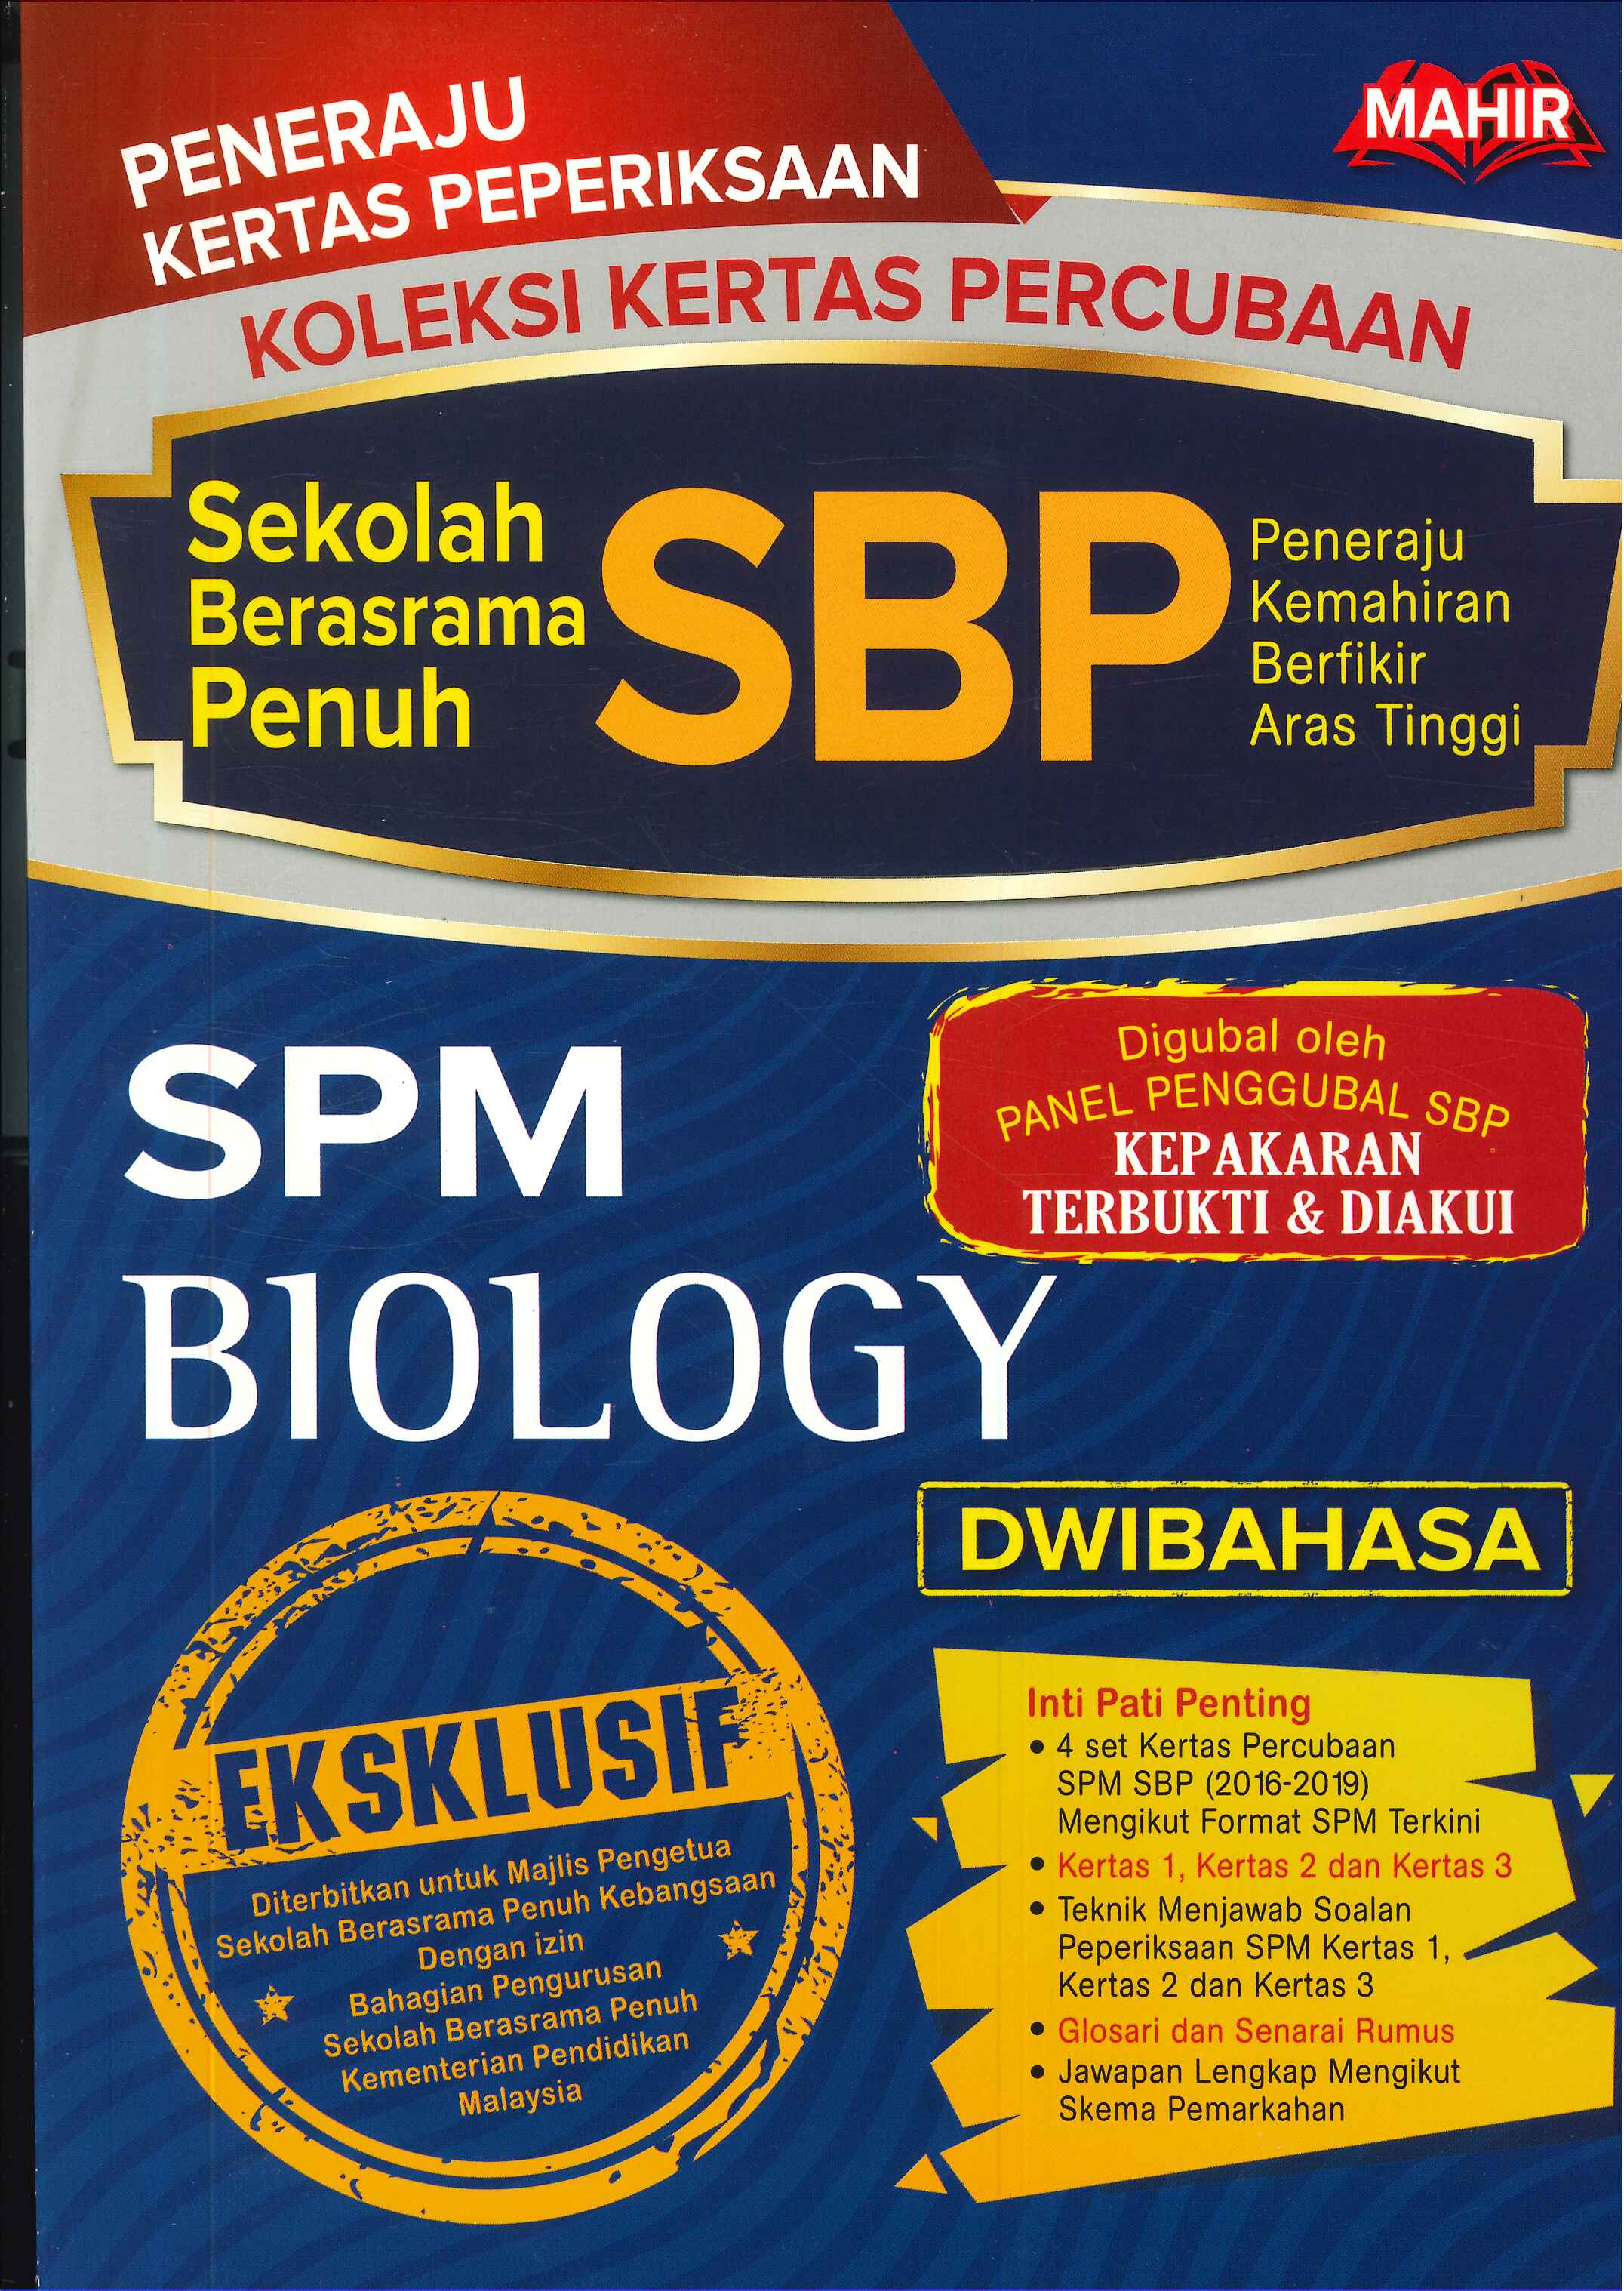 Skema Jawapan Percubaan Spm 2019 Biology Terengganu  malayuswea